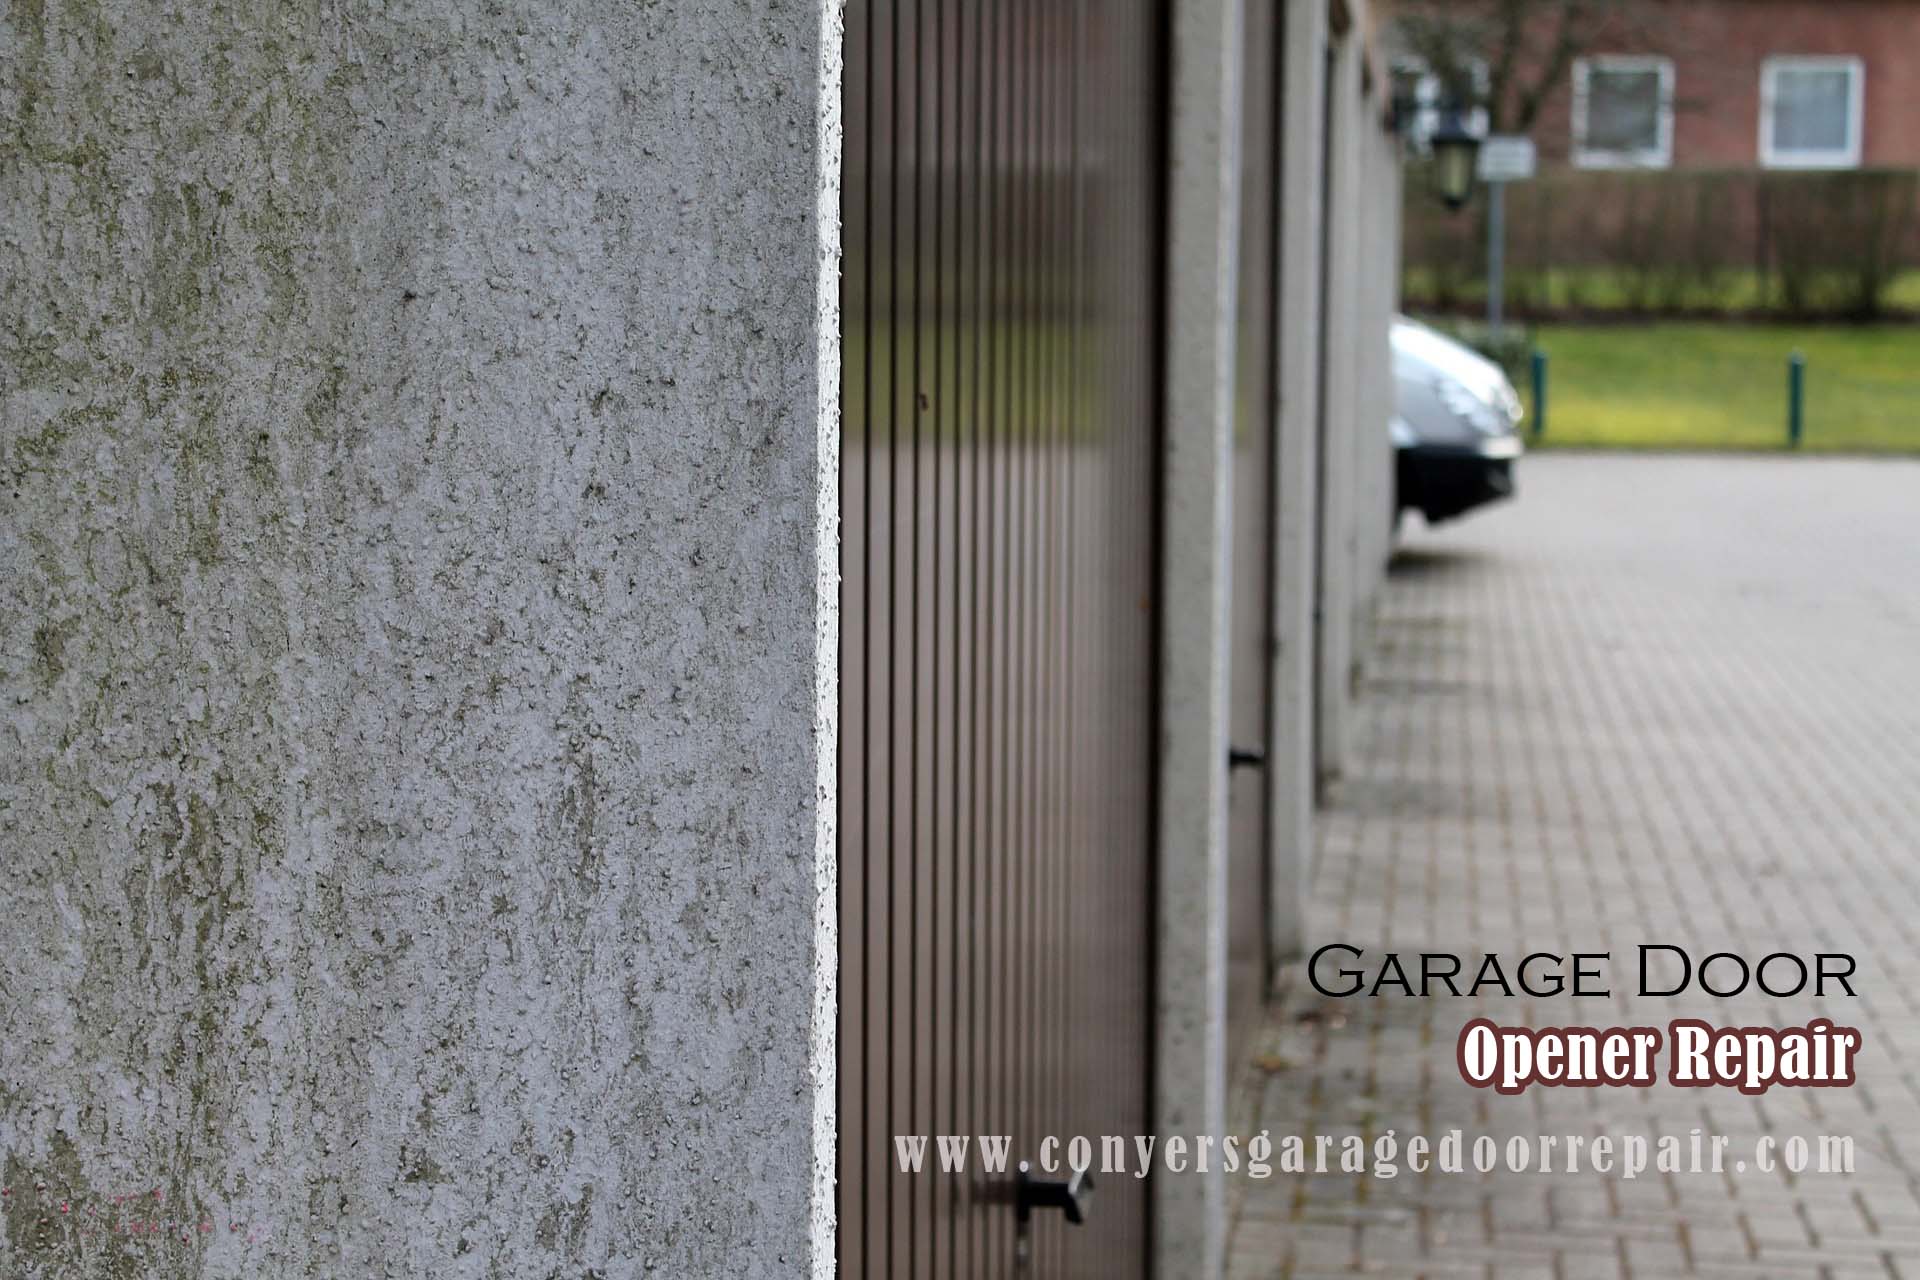 Conyers-garage-door-opener-repair